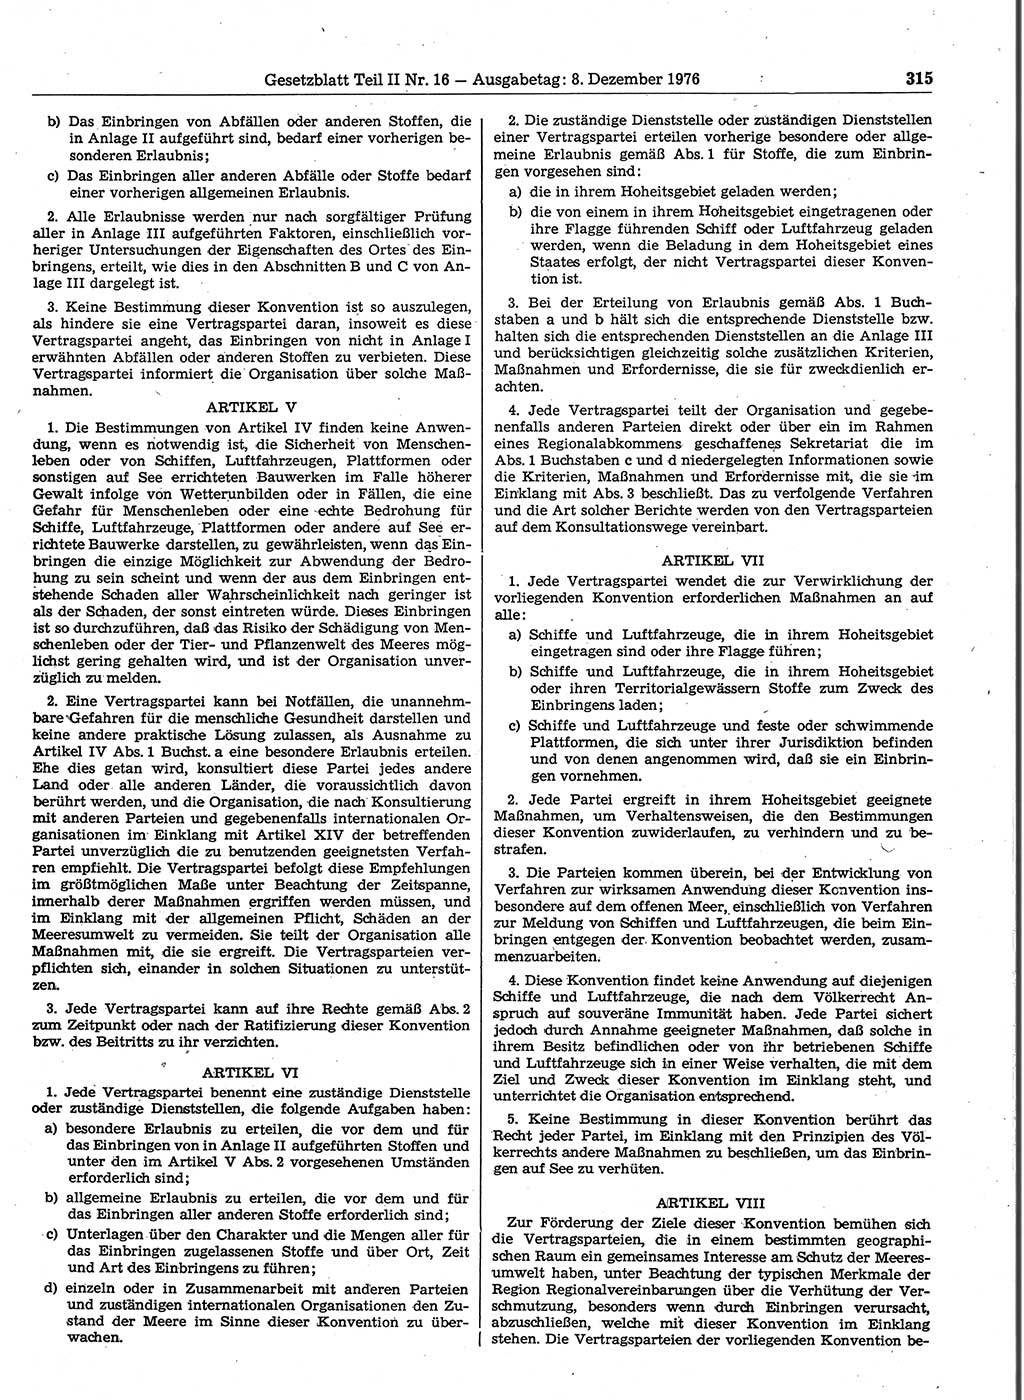 Gesetzblatt (GBl.) der Deutschen Demokratischen Republik (DDR) Teil ⅠⅠ 1976, Seite 315 (GBl. DDR ⅠⅠ 1976, S. 315)